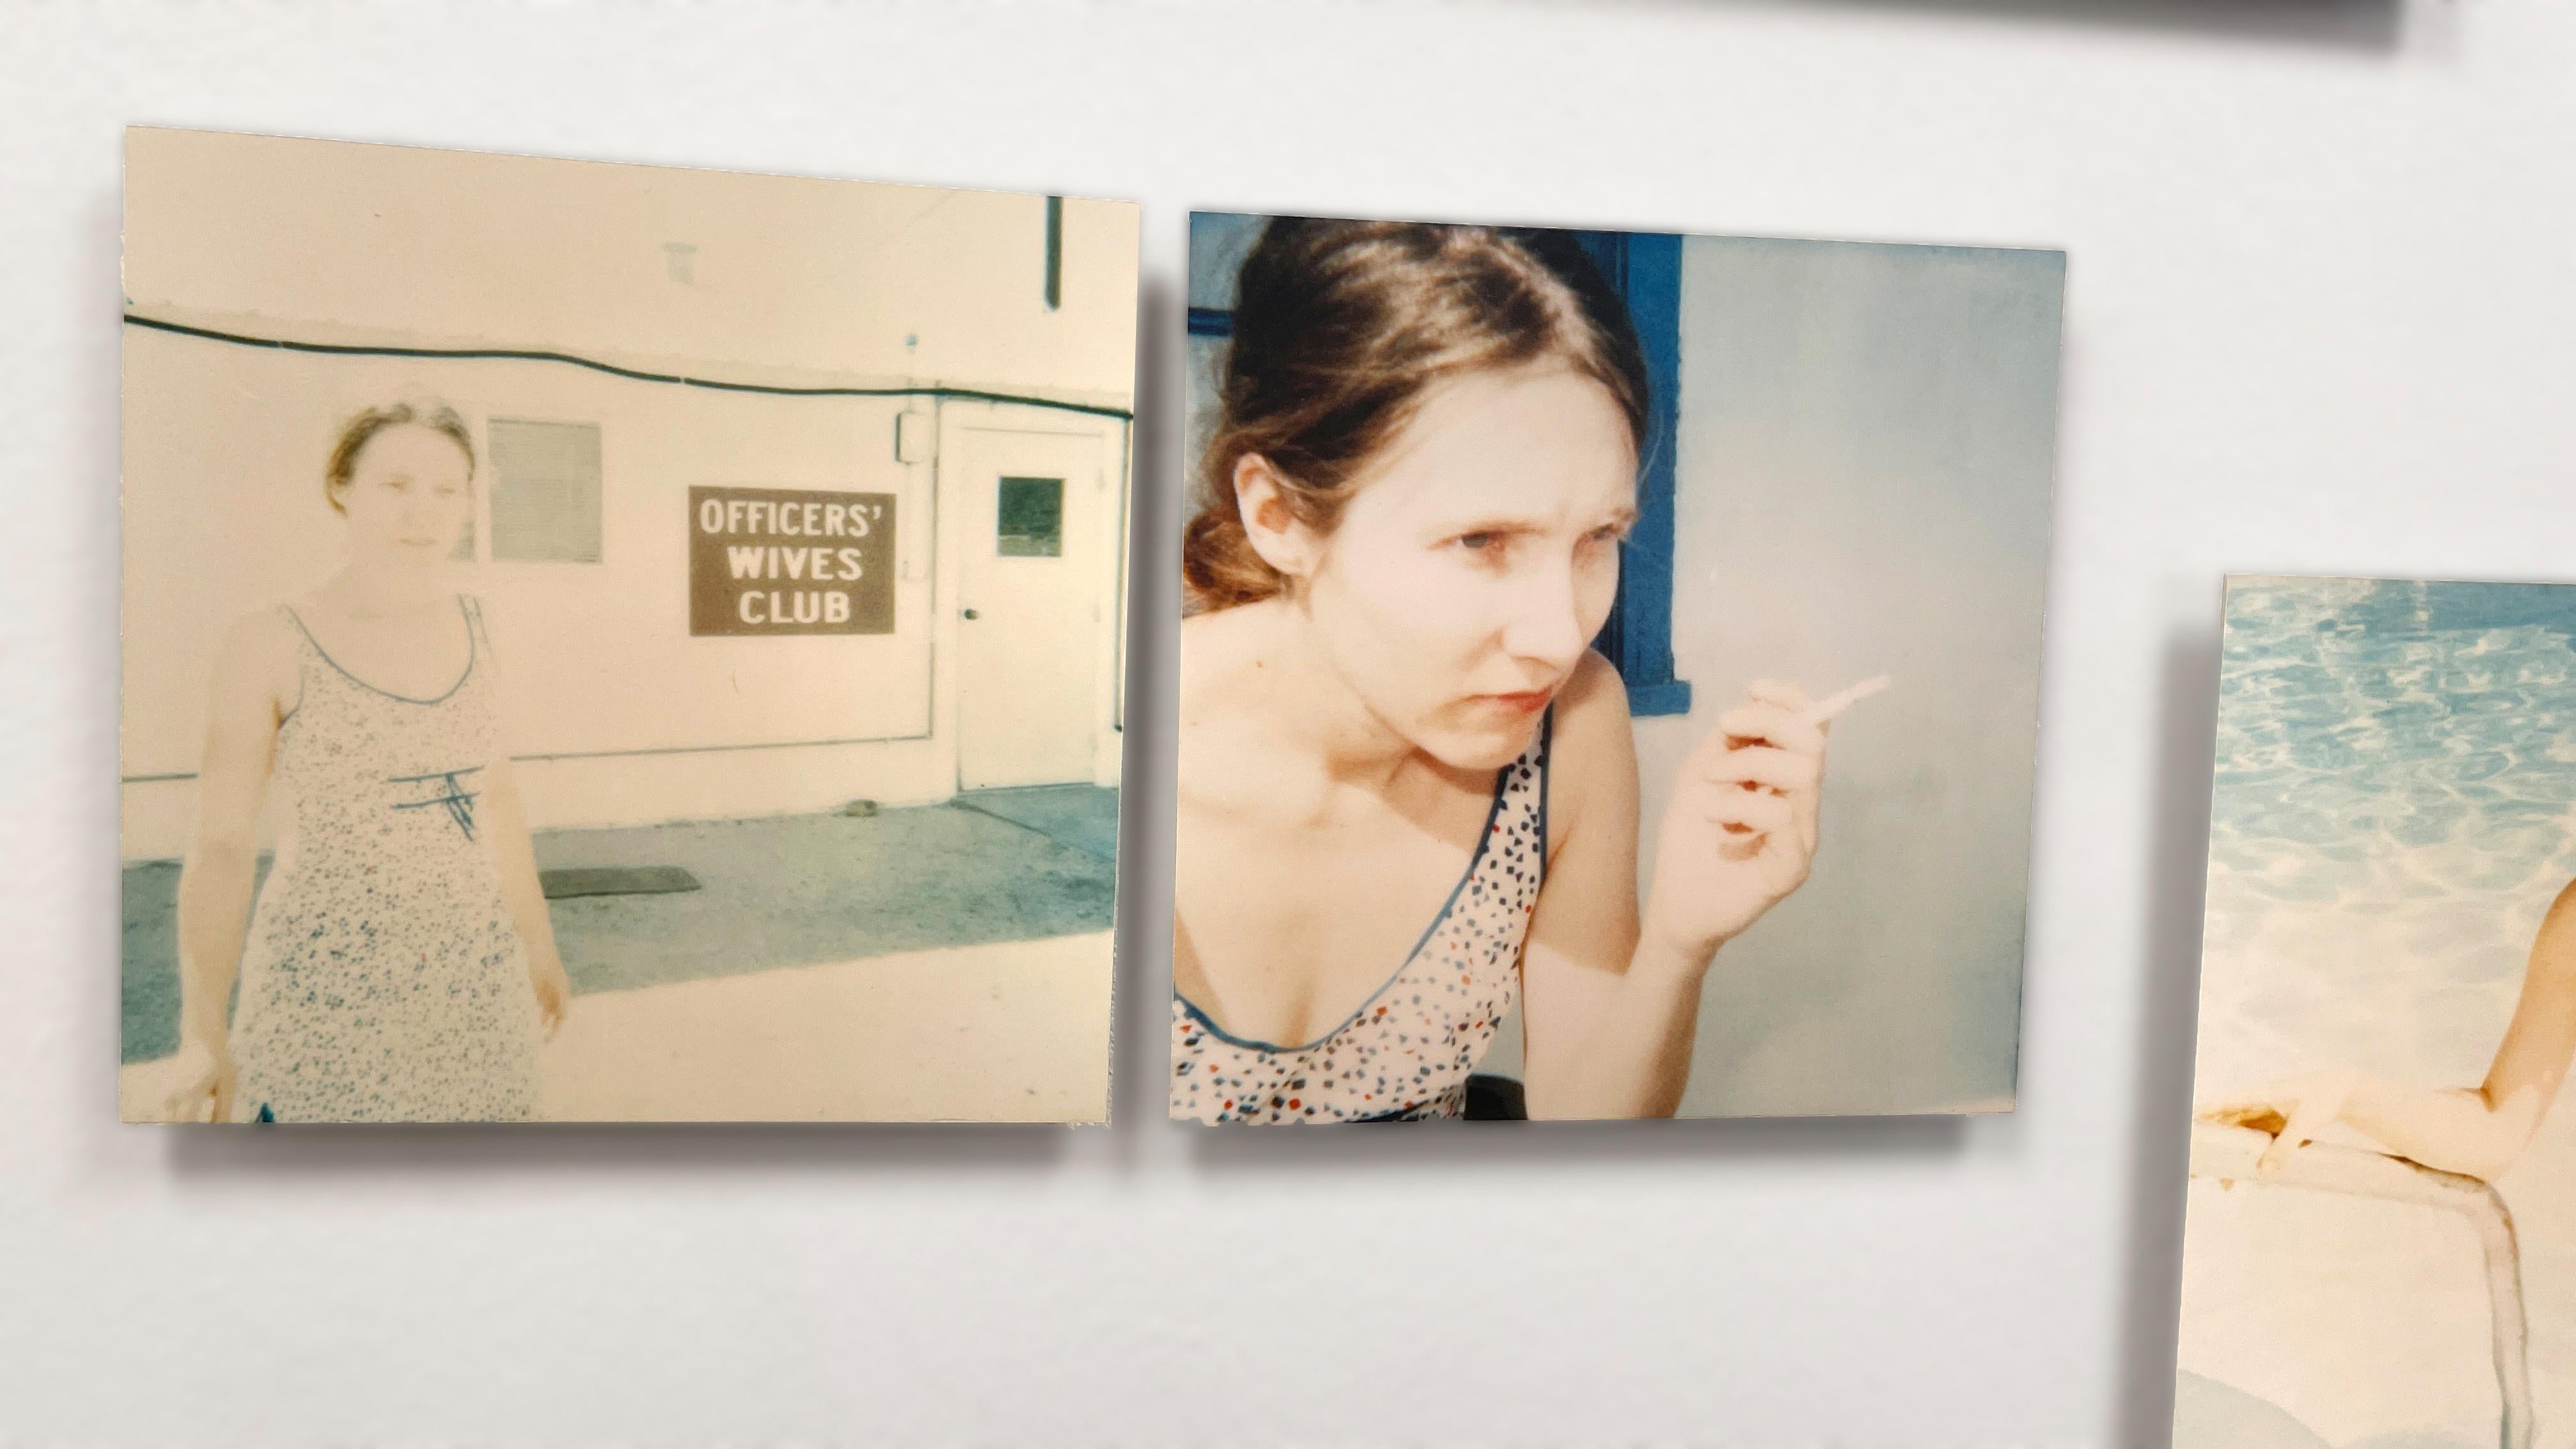 Officer's Wives Club (29 Palms, CA), Diptychon - 1999

Auflage von 23/25,
Jeweils 40x40cm, installiert 40x87cm, einschließlich Fuge.
2 analoge C-Prints, vom Künstler handgedruckt, basierend auf den 2 Polaroids.
Signiert auf der Rückseite mit